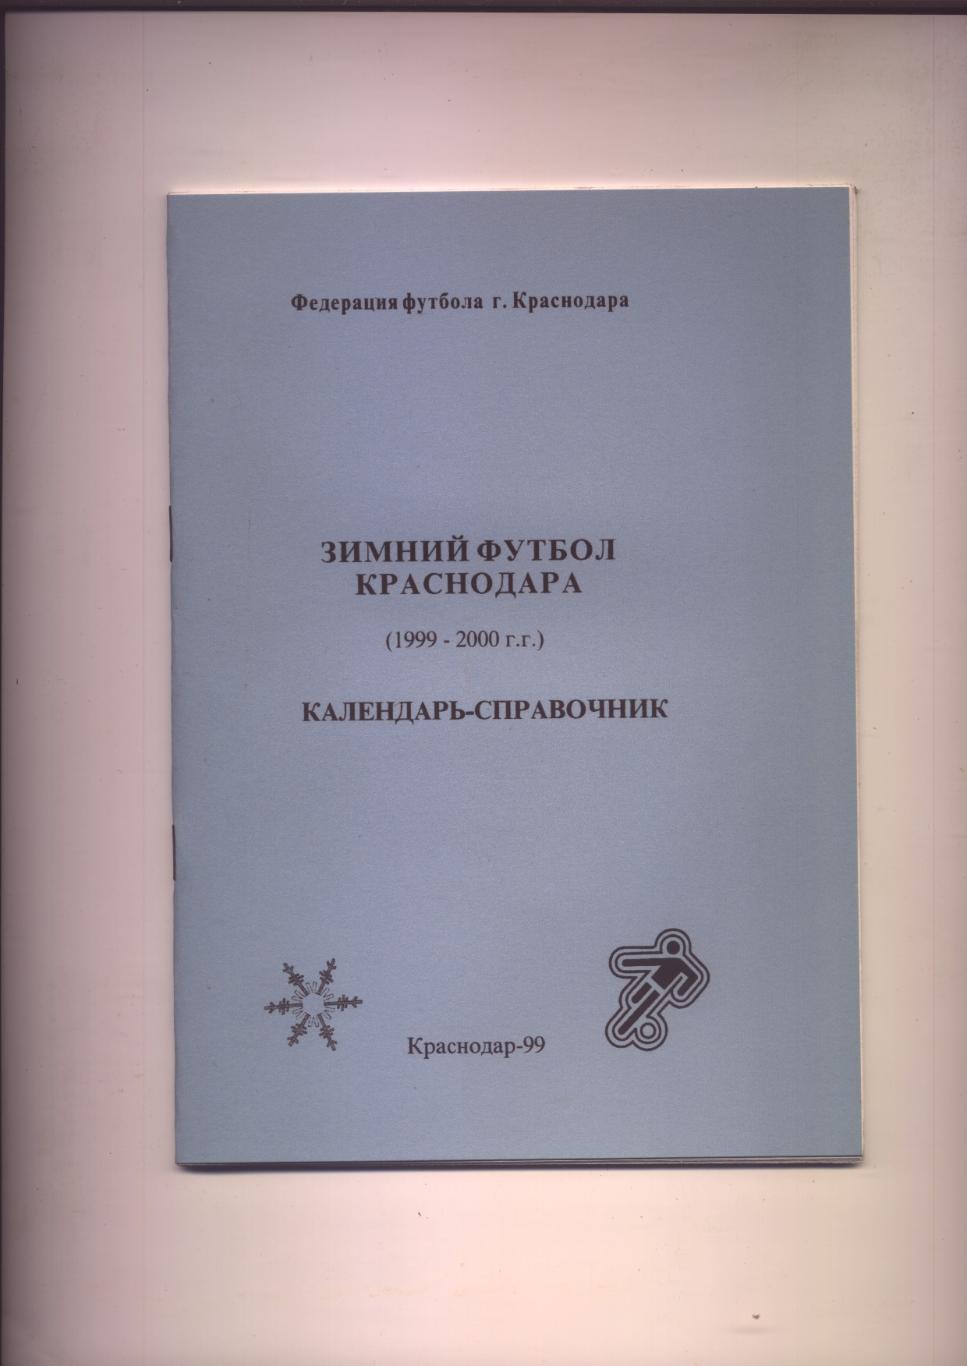 Зимний футбол Краснодара 1999-2000 гг 40 стр.